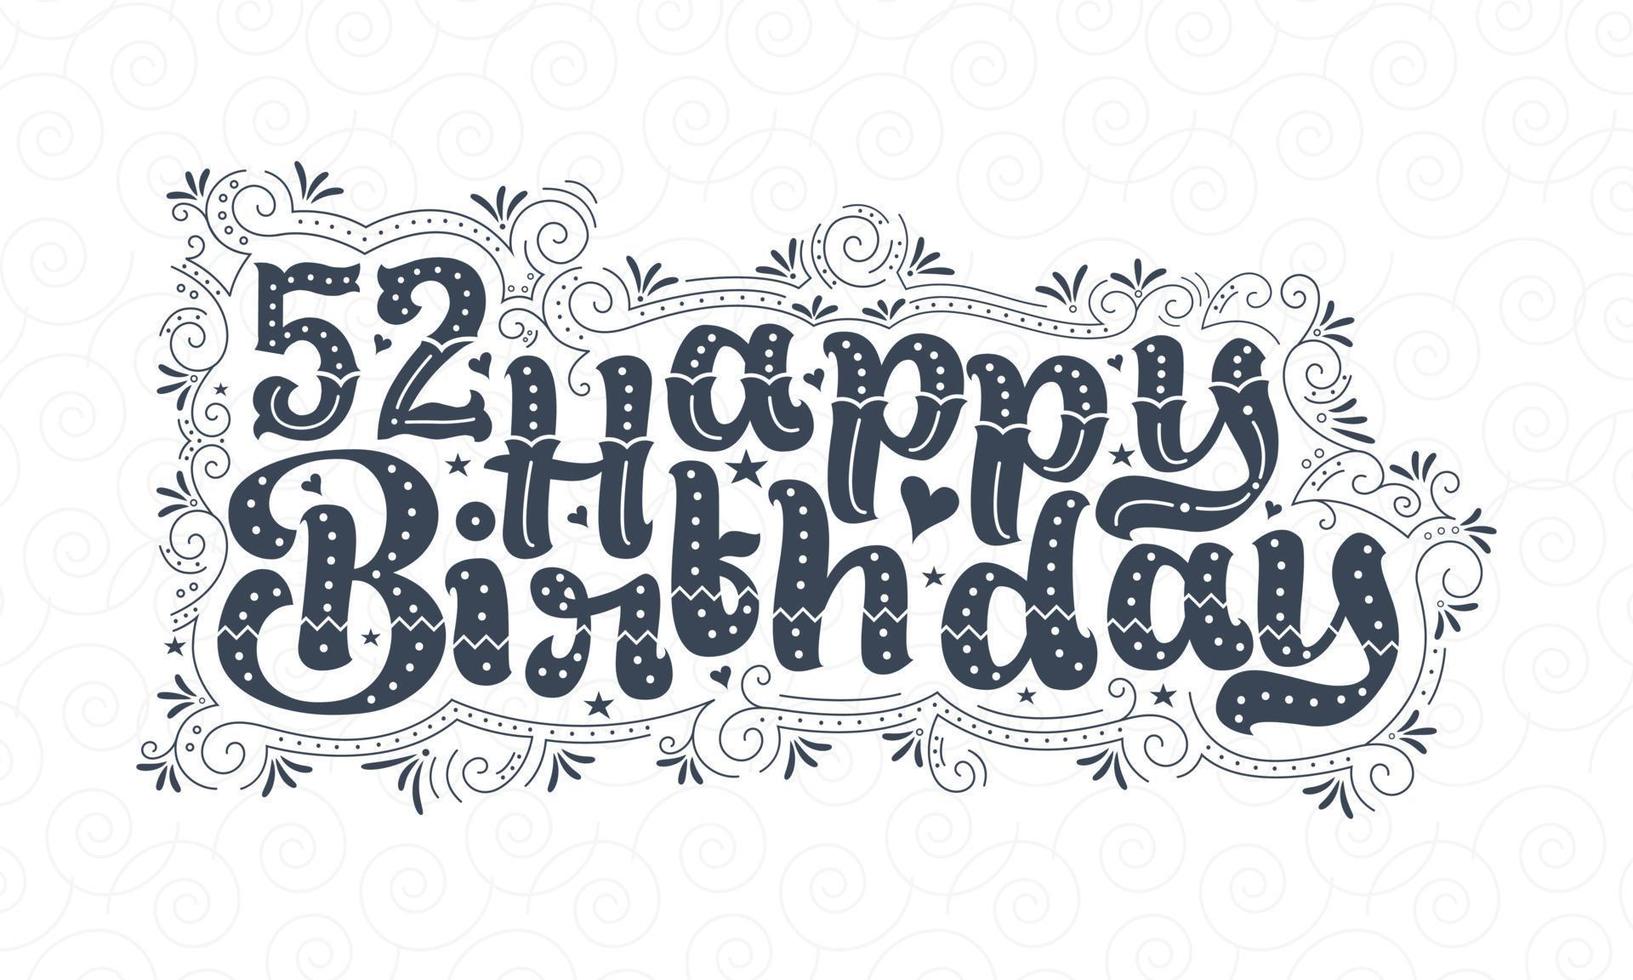 52e lettrage de joyeux anniversaire, 52 ans d'anniversaire belle conception de typographie avec des points, des lignes et des feuilles. vecteur